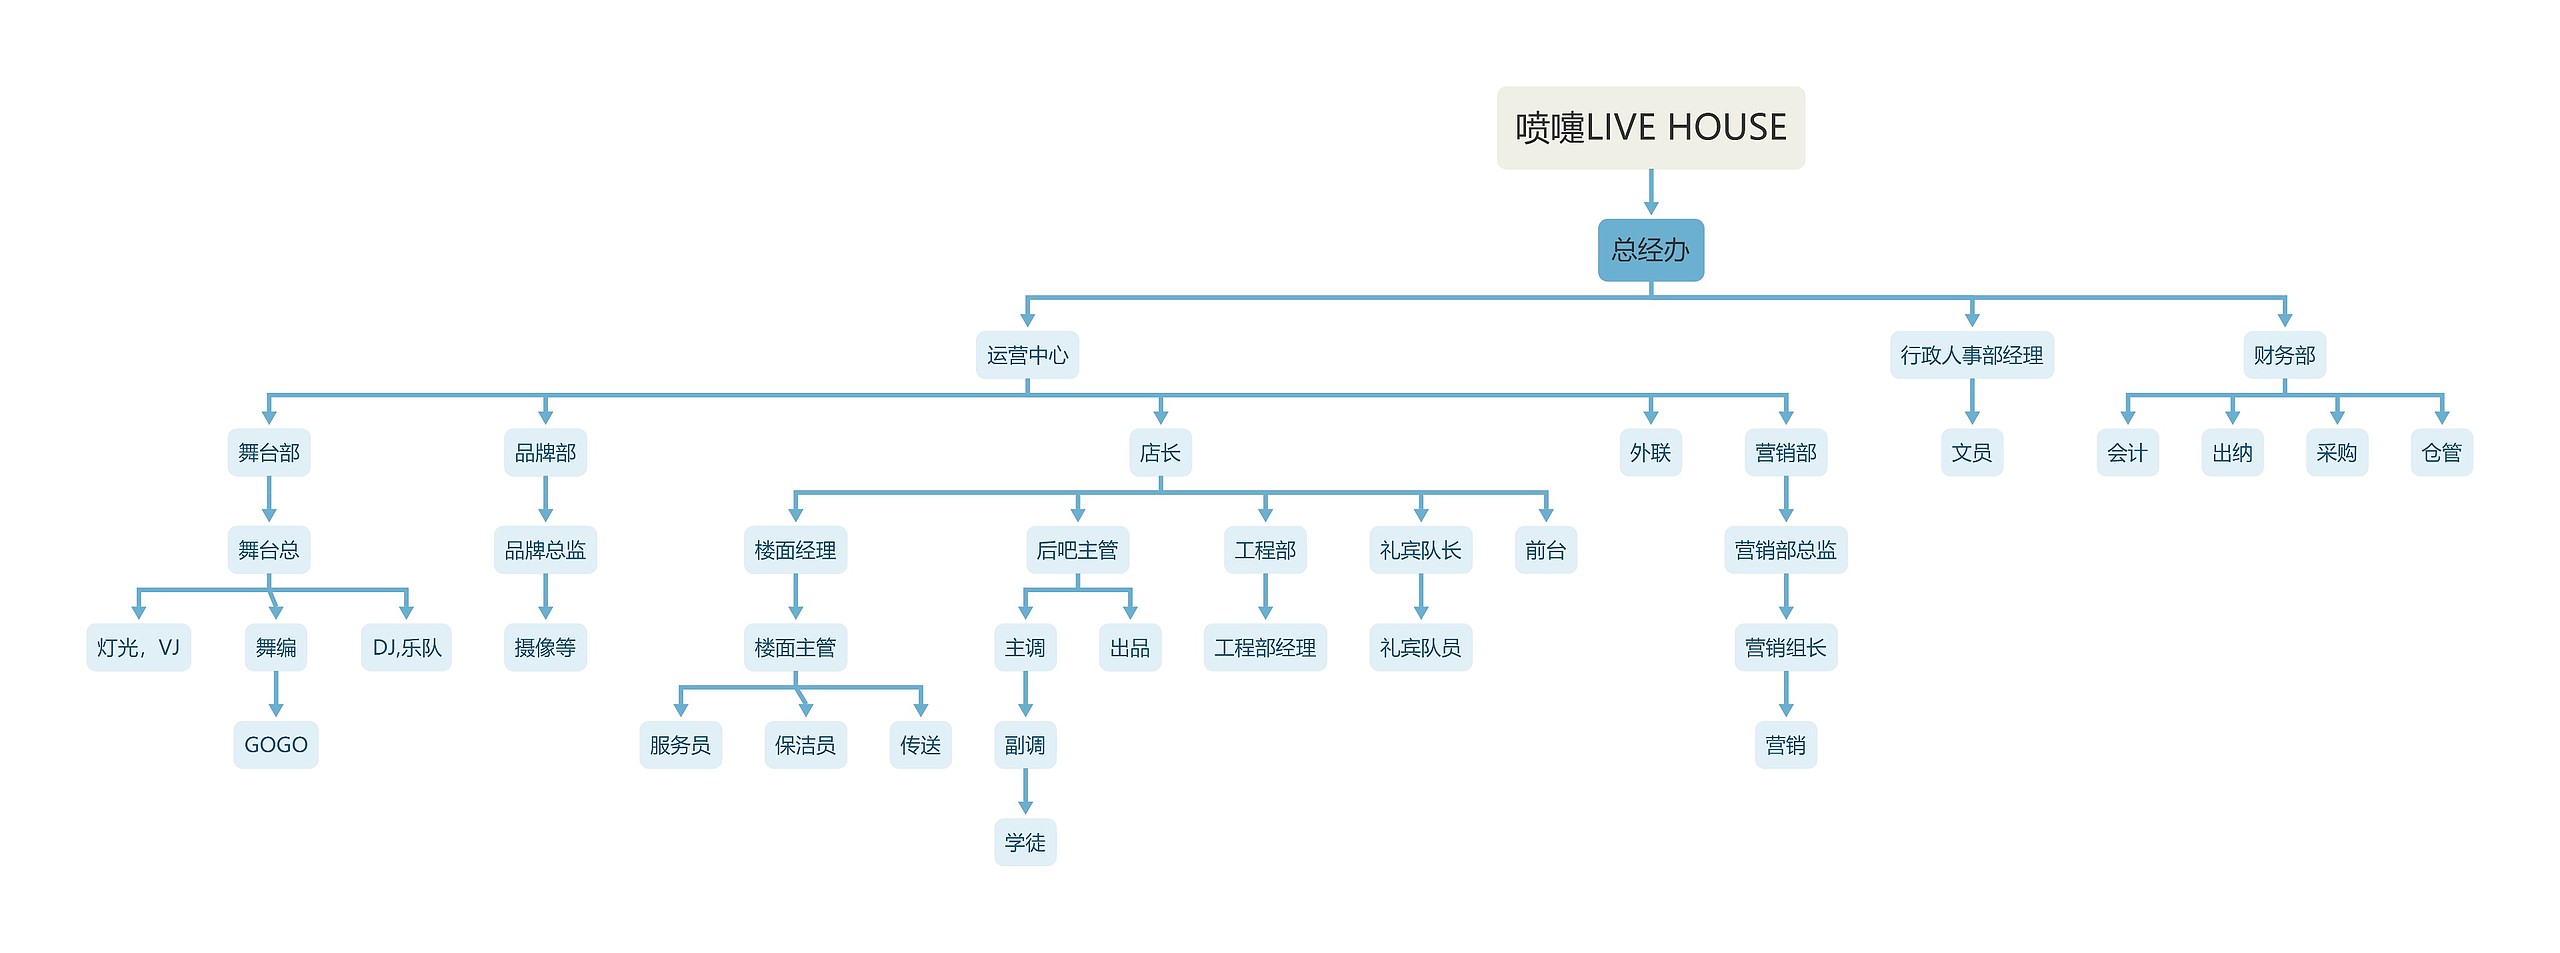 喷嚏LIVE HOUSE组织架构图